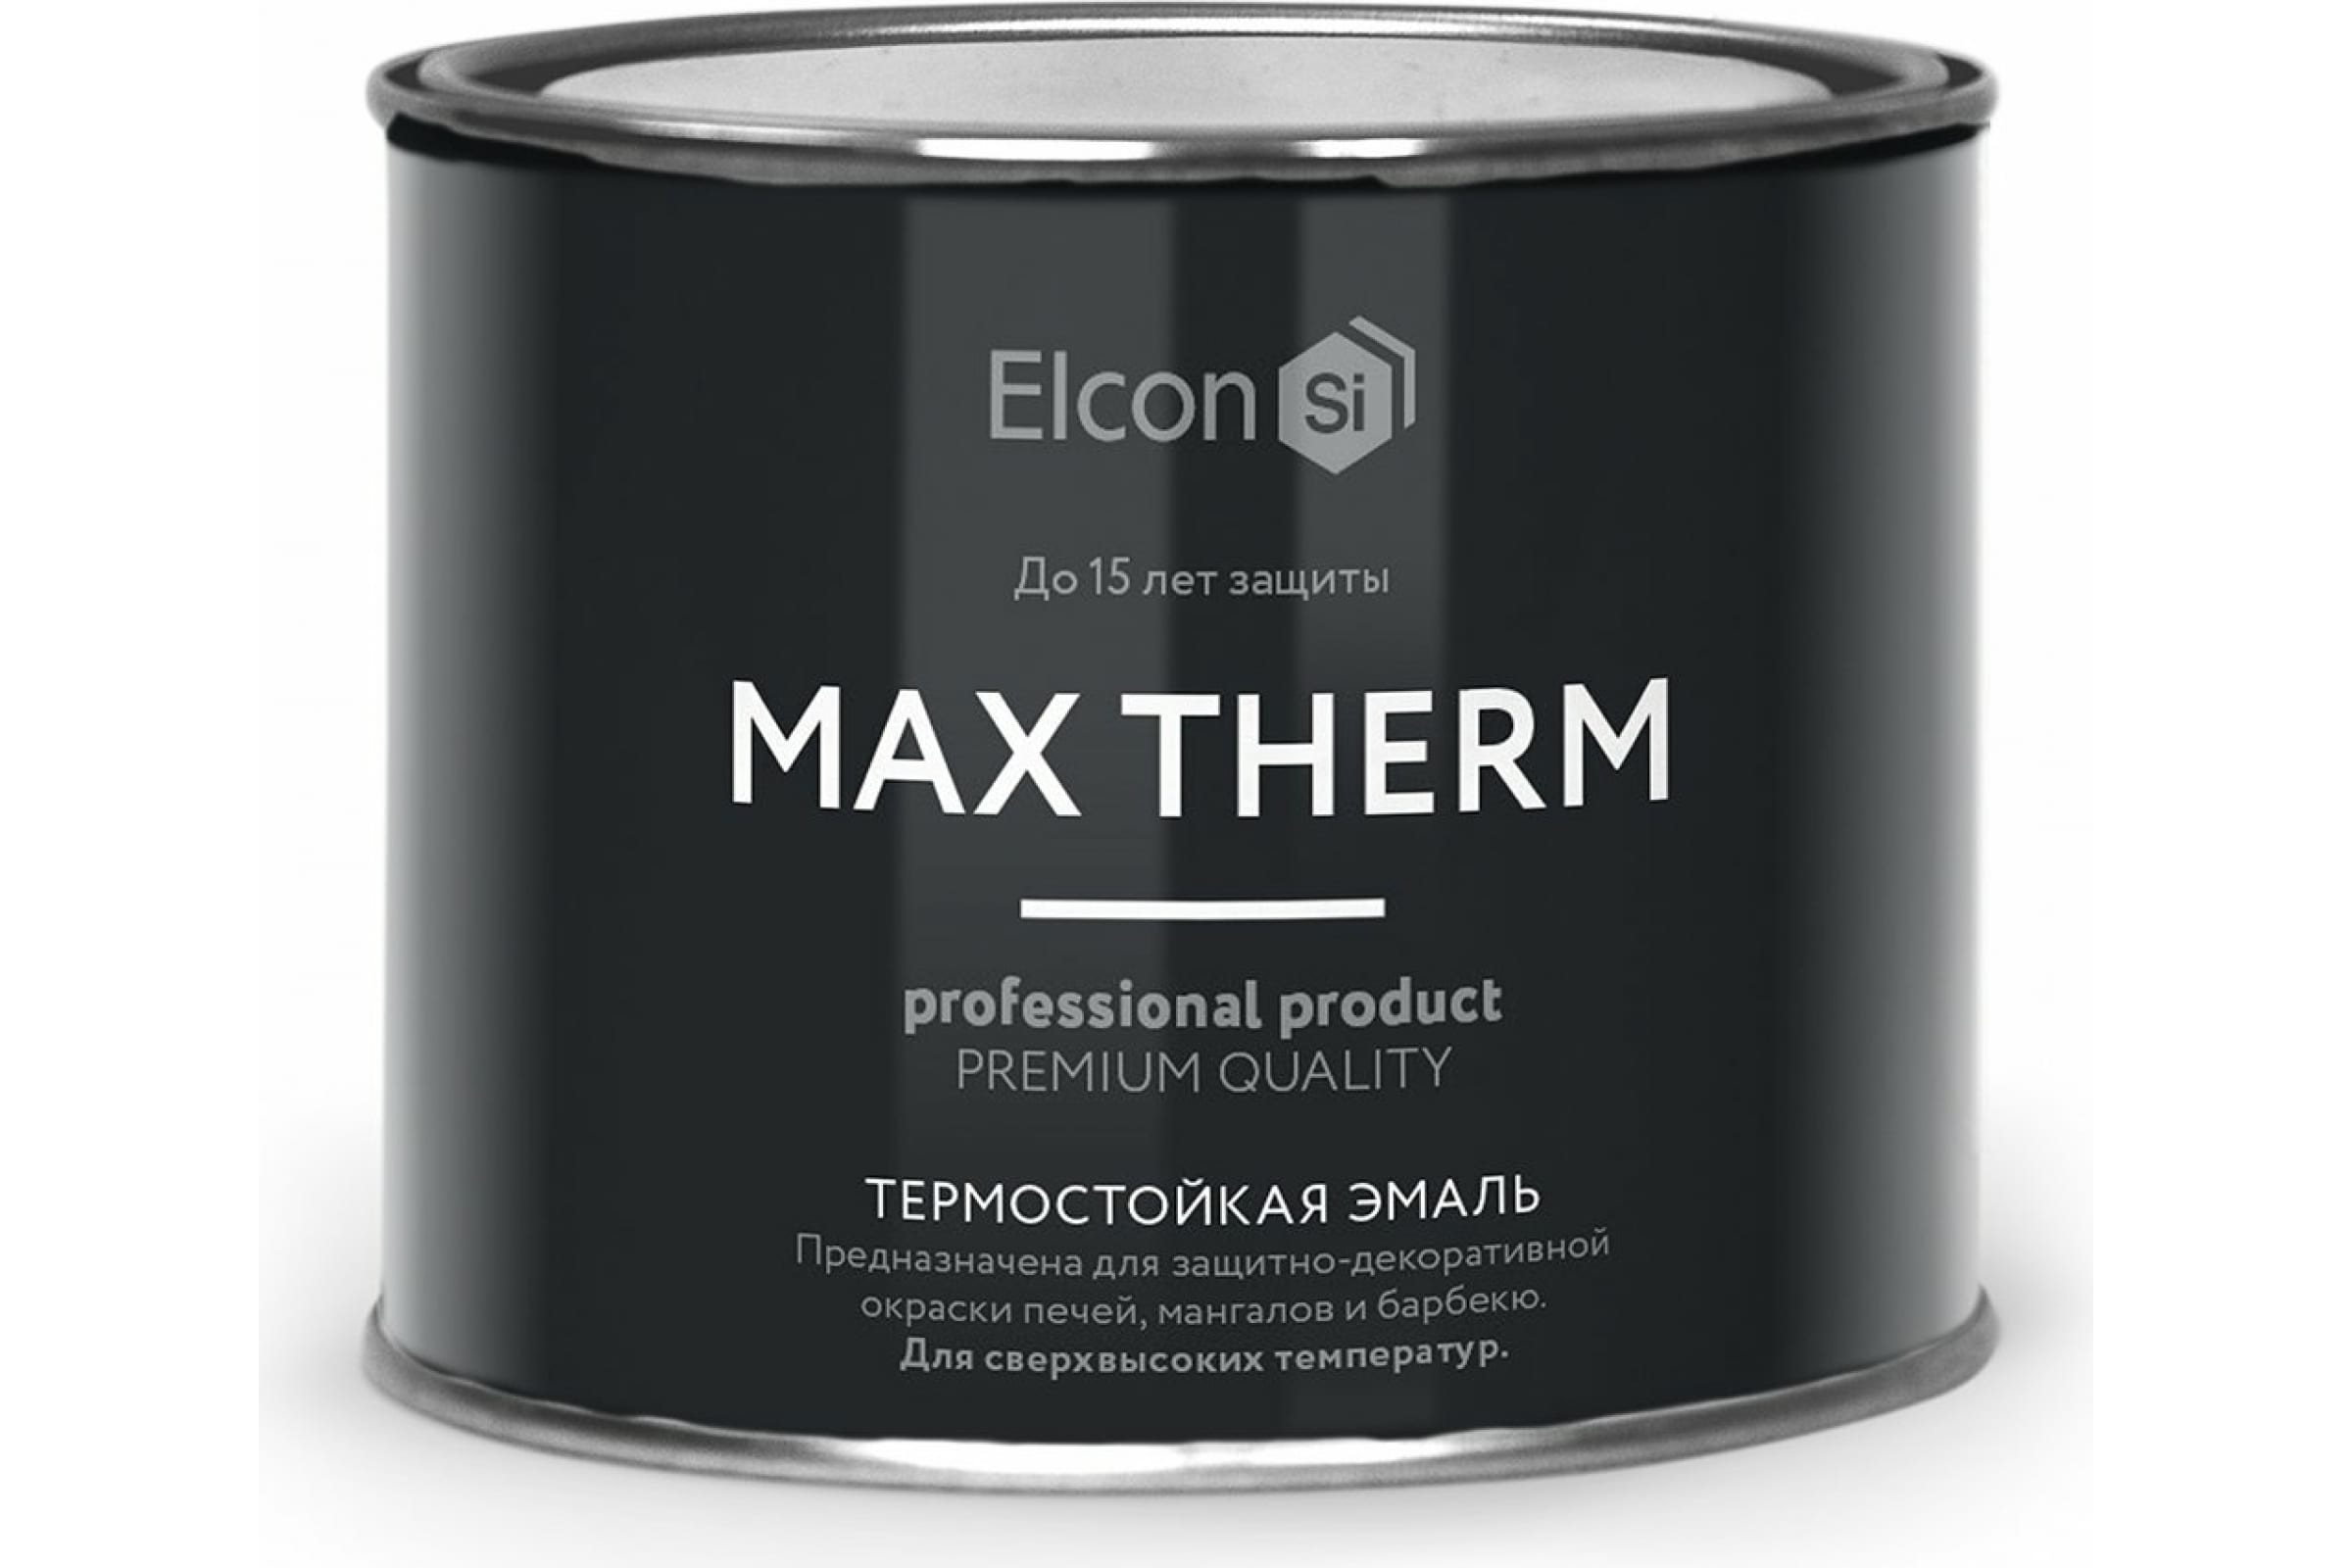 Термостойкая антикоррозионная эмаль Elcon Max Therm до 700 градусов, 0,4 л, зеленая термостойкая антикоррозионная эмаль elcon max therm до 700 градусов 0 4 л зеленая